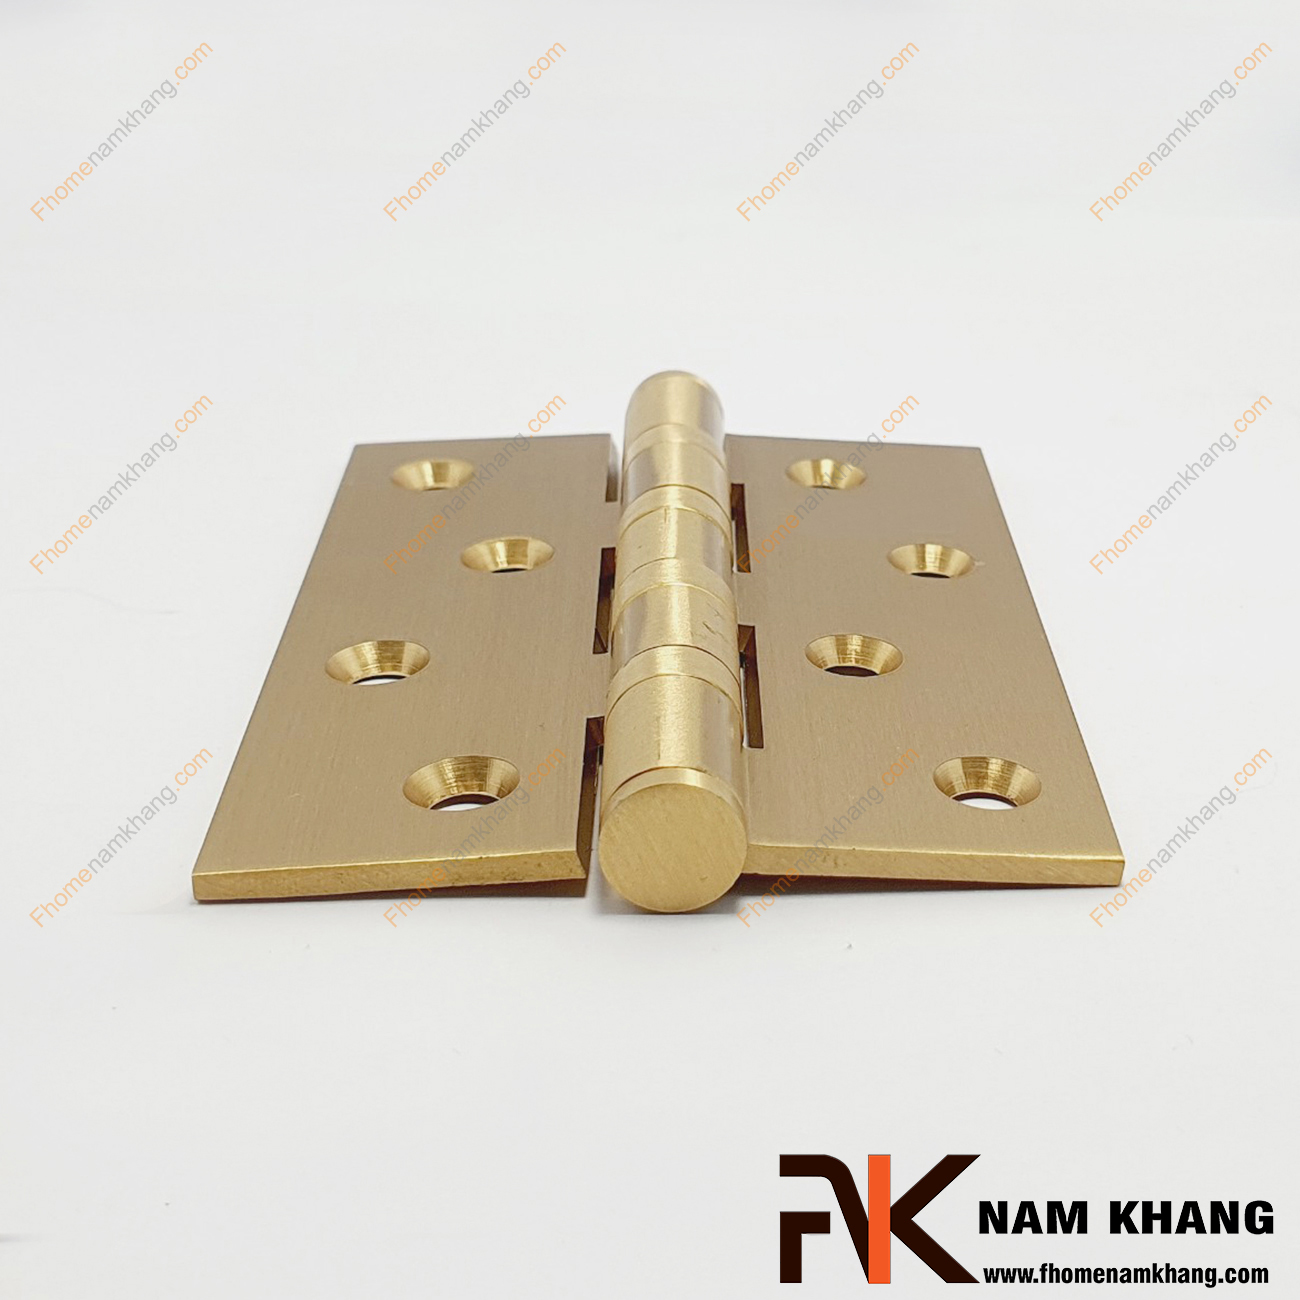 Bản lề lá dạng trơn màu đồng vàng NK308-10-3DO được sản xuất từ đồng cao cấp. Dòng bản lề này được xử lý kỹ thuật cao, các góc bo tròn tỉ mỉ, tạo nên sự tinh tế và đảm bảo an toàn trong quá trình sử dụng.